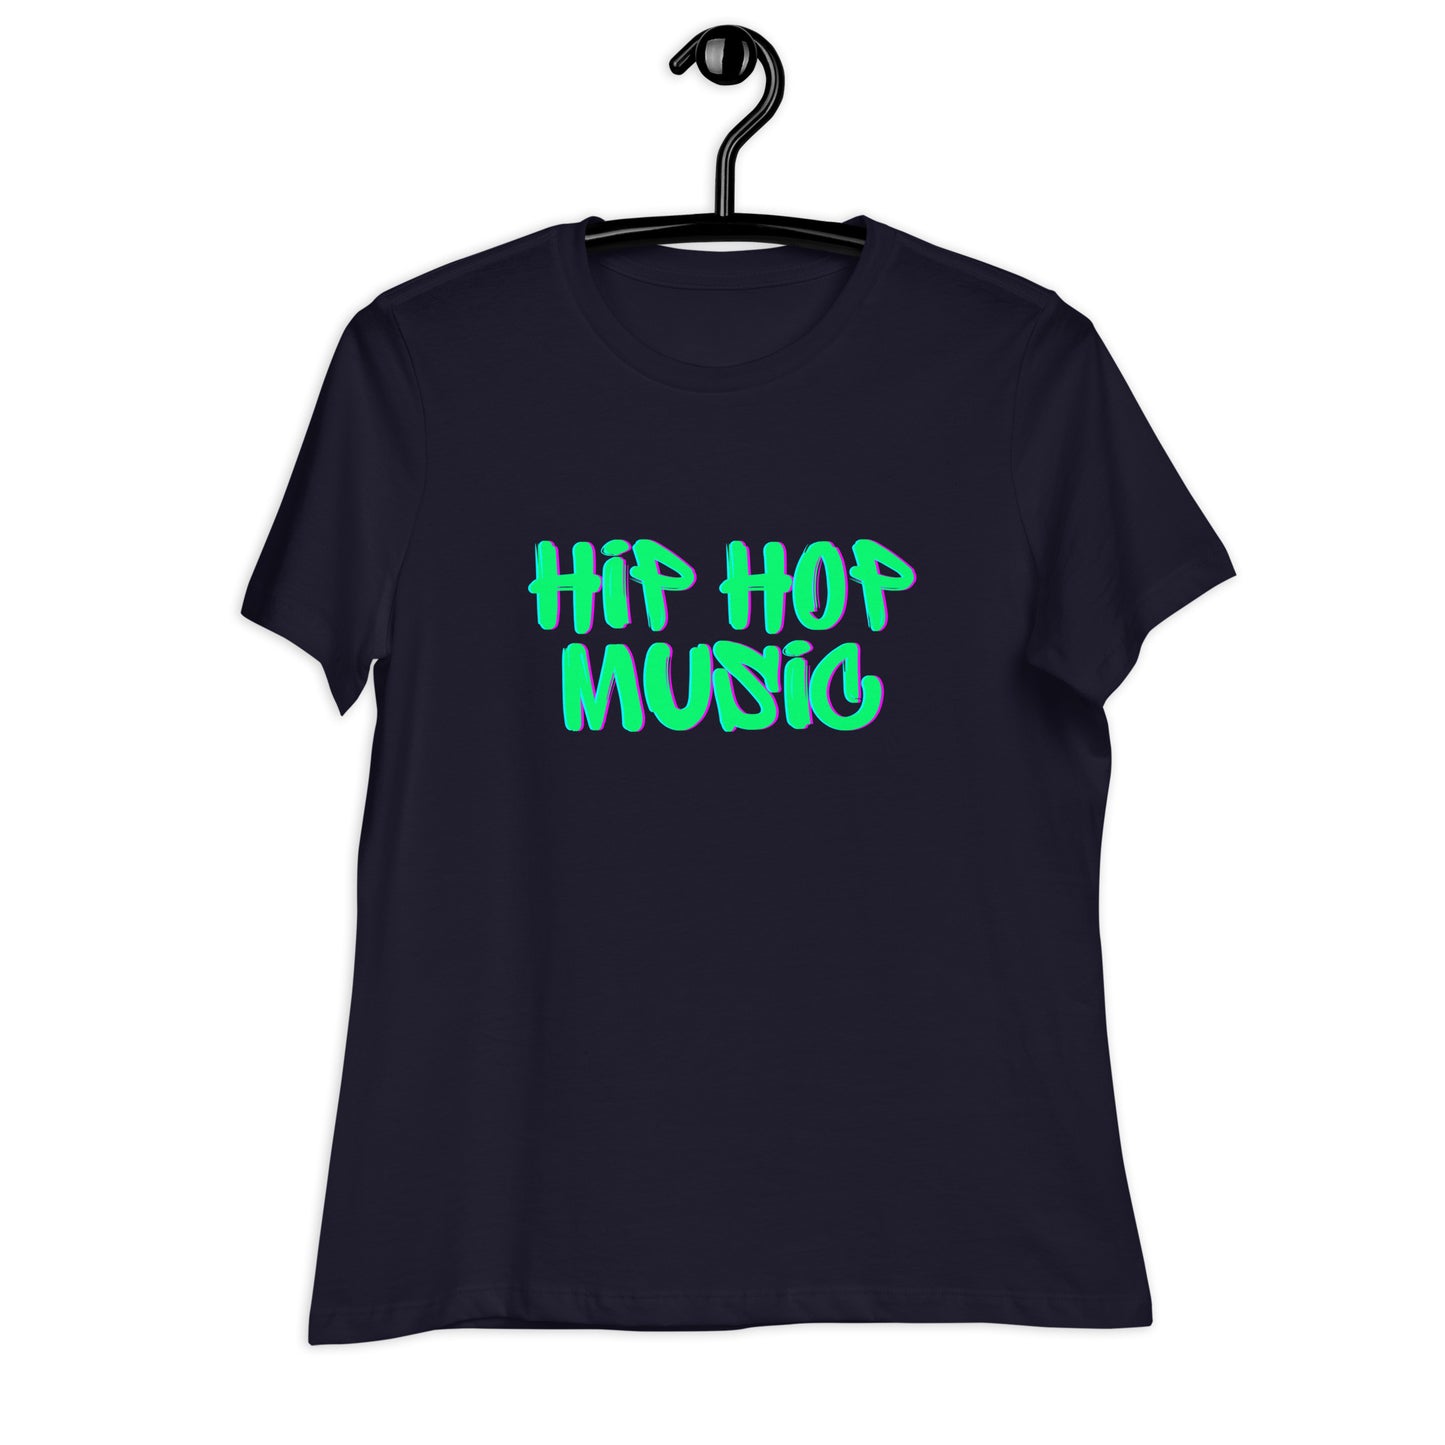 Hip Hop Music Girls and Women's Relaxed T-Shirt